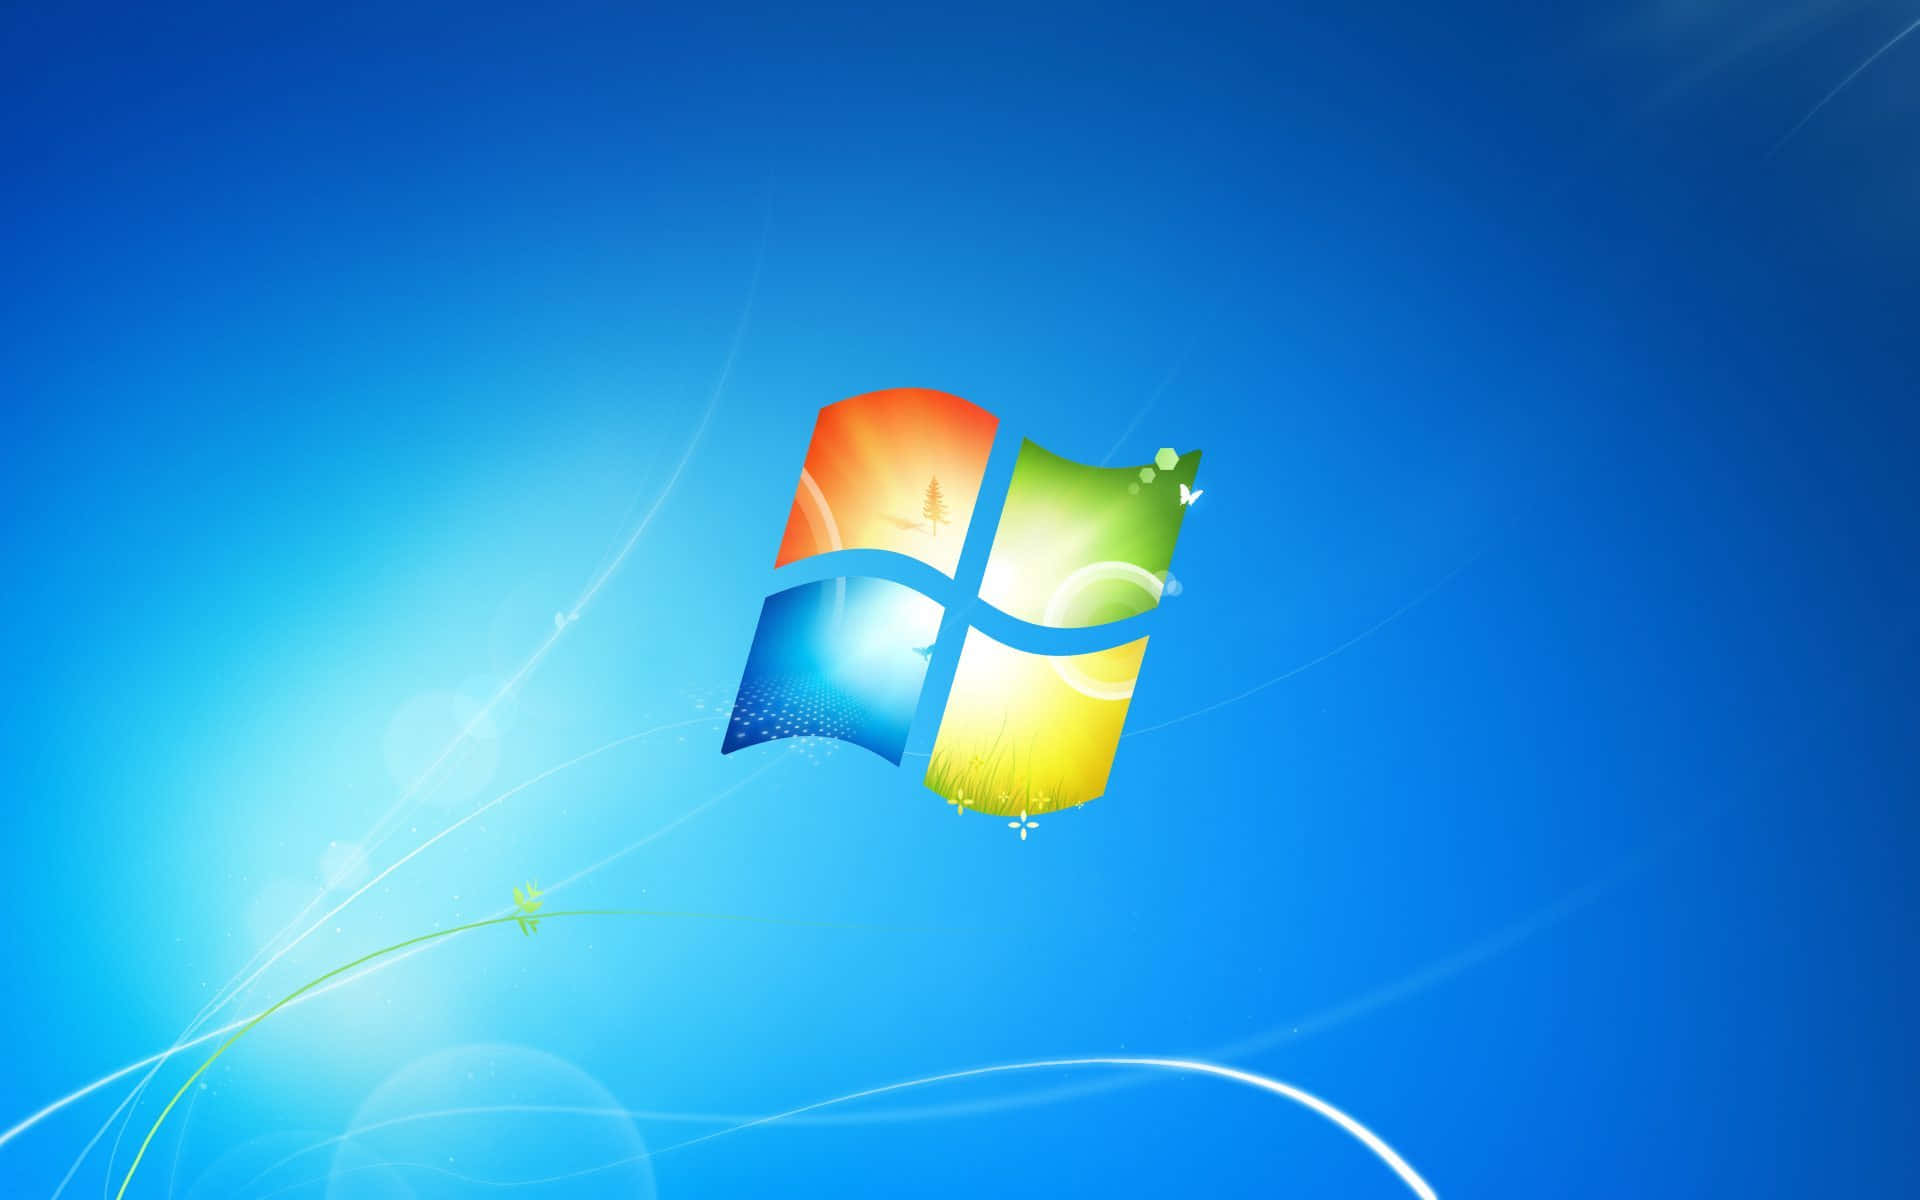 Windows7 - Instalando Actualizaciones, Trabajando En Múltiples Dispositivos.